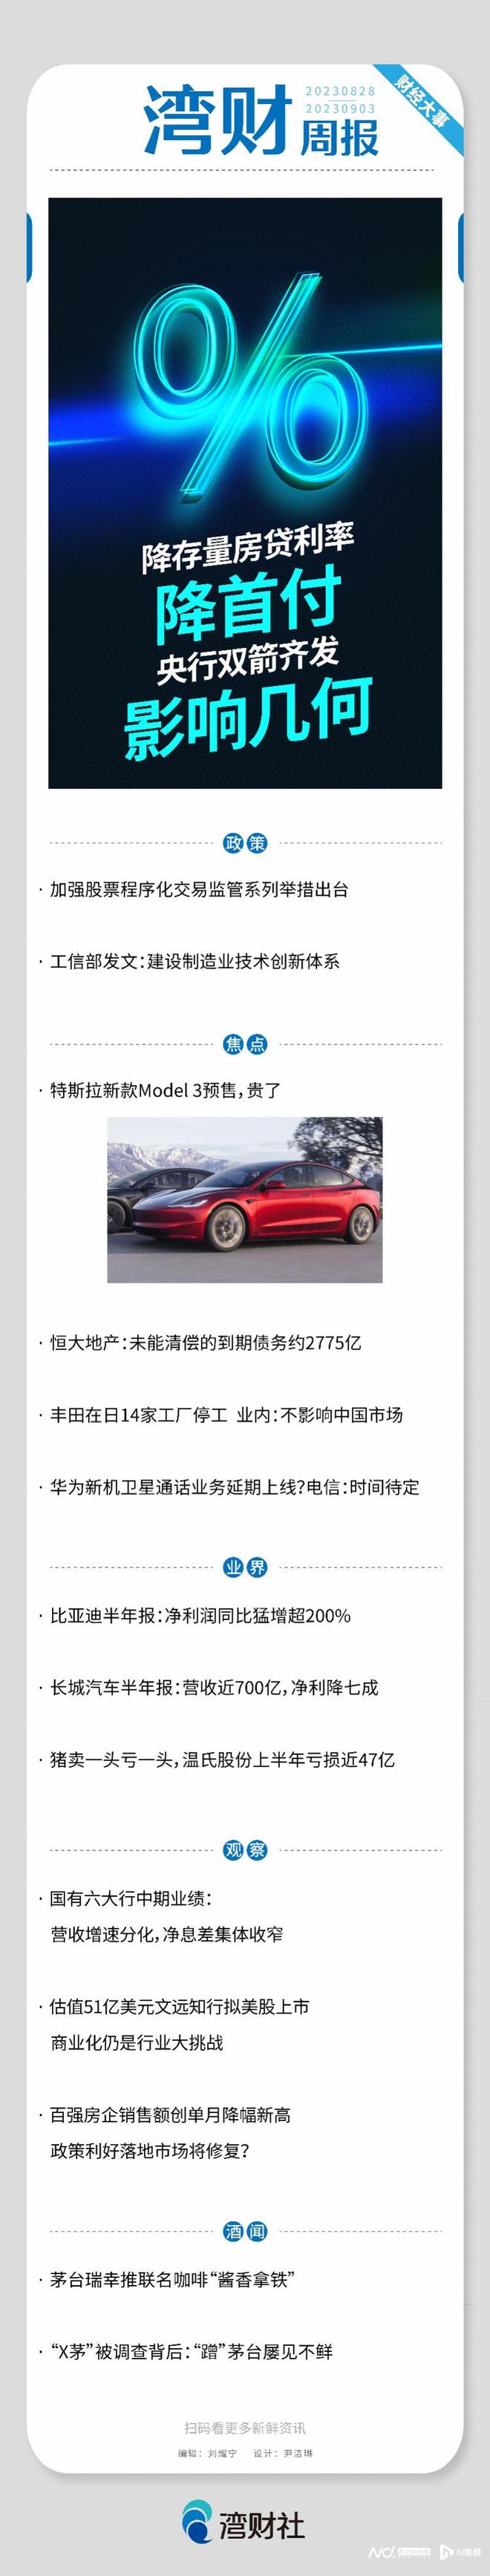 湾财周报| 央行双箭齐发影响几何；新Model 3预售